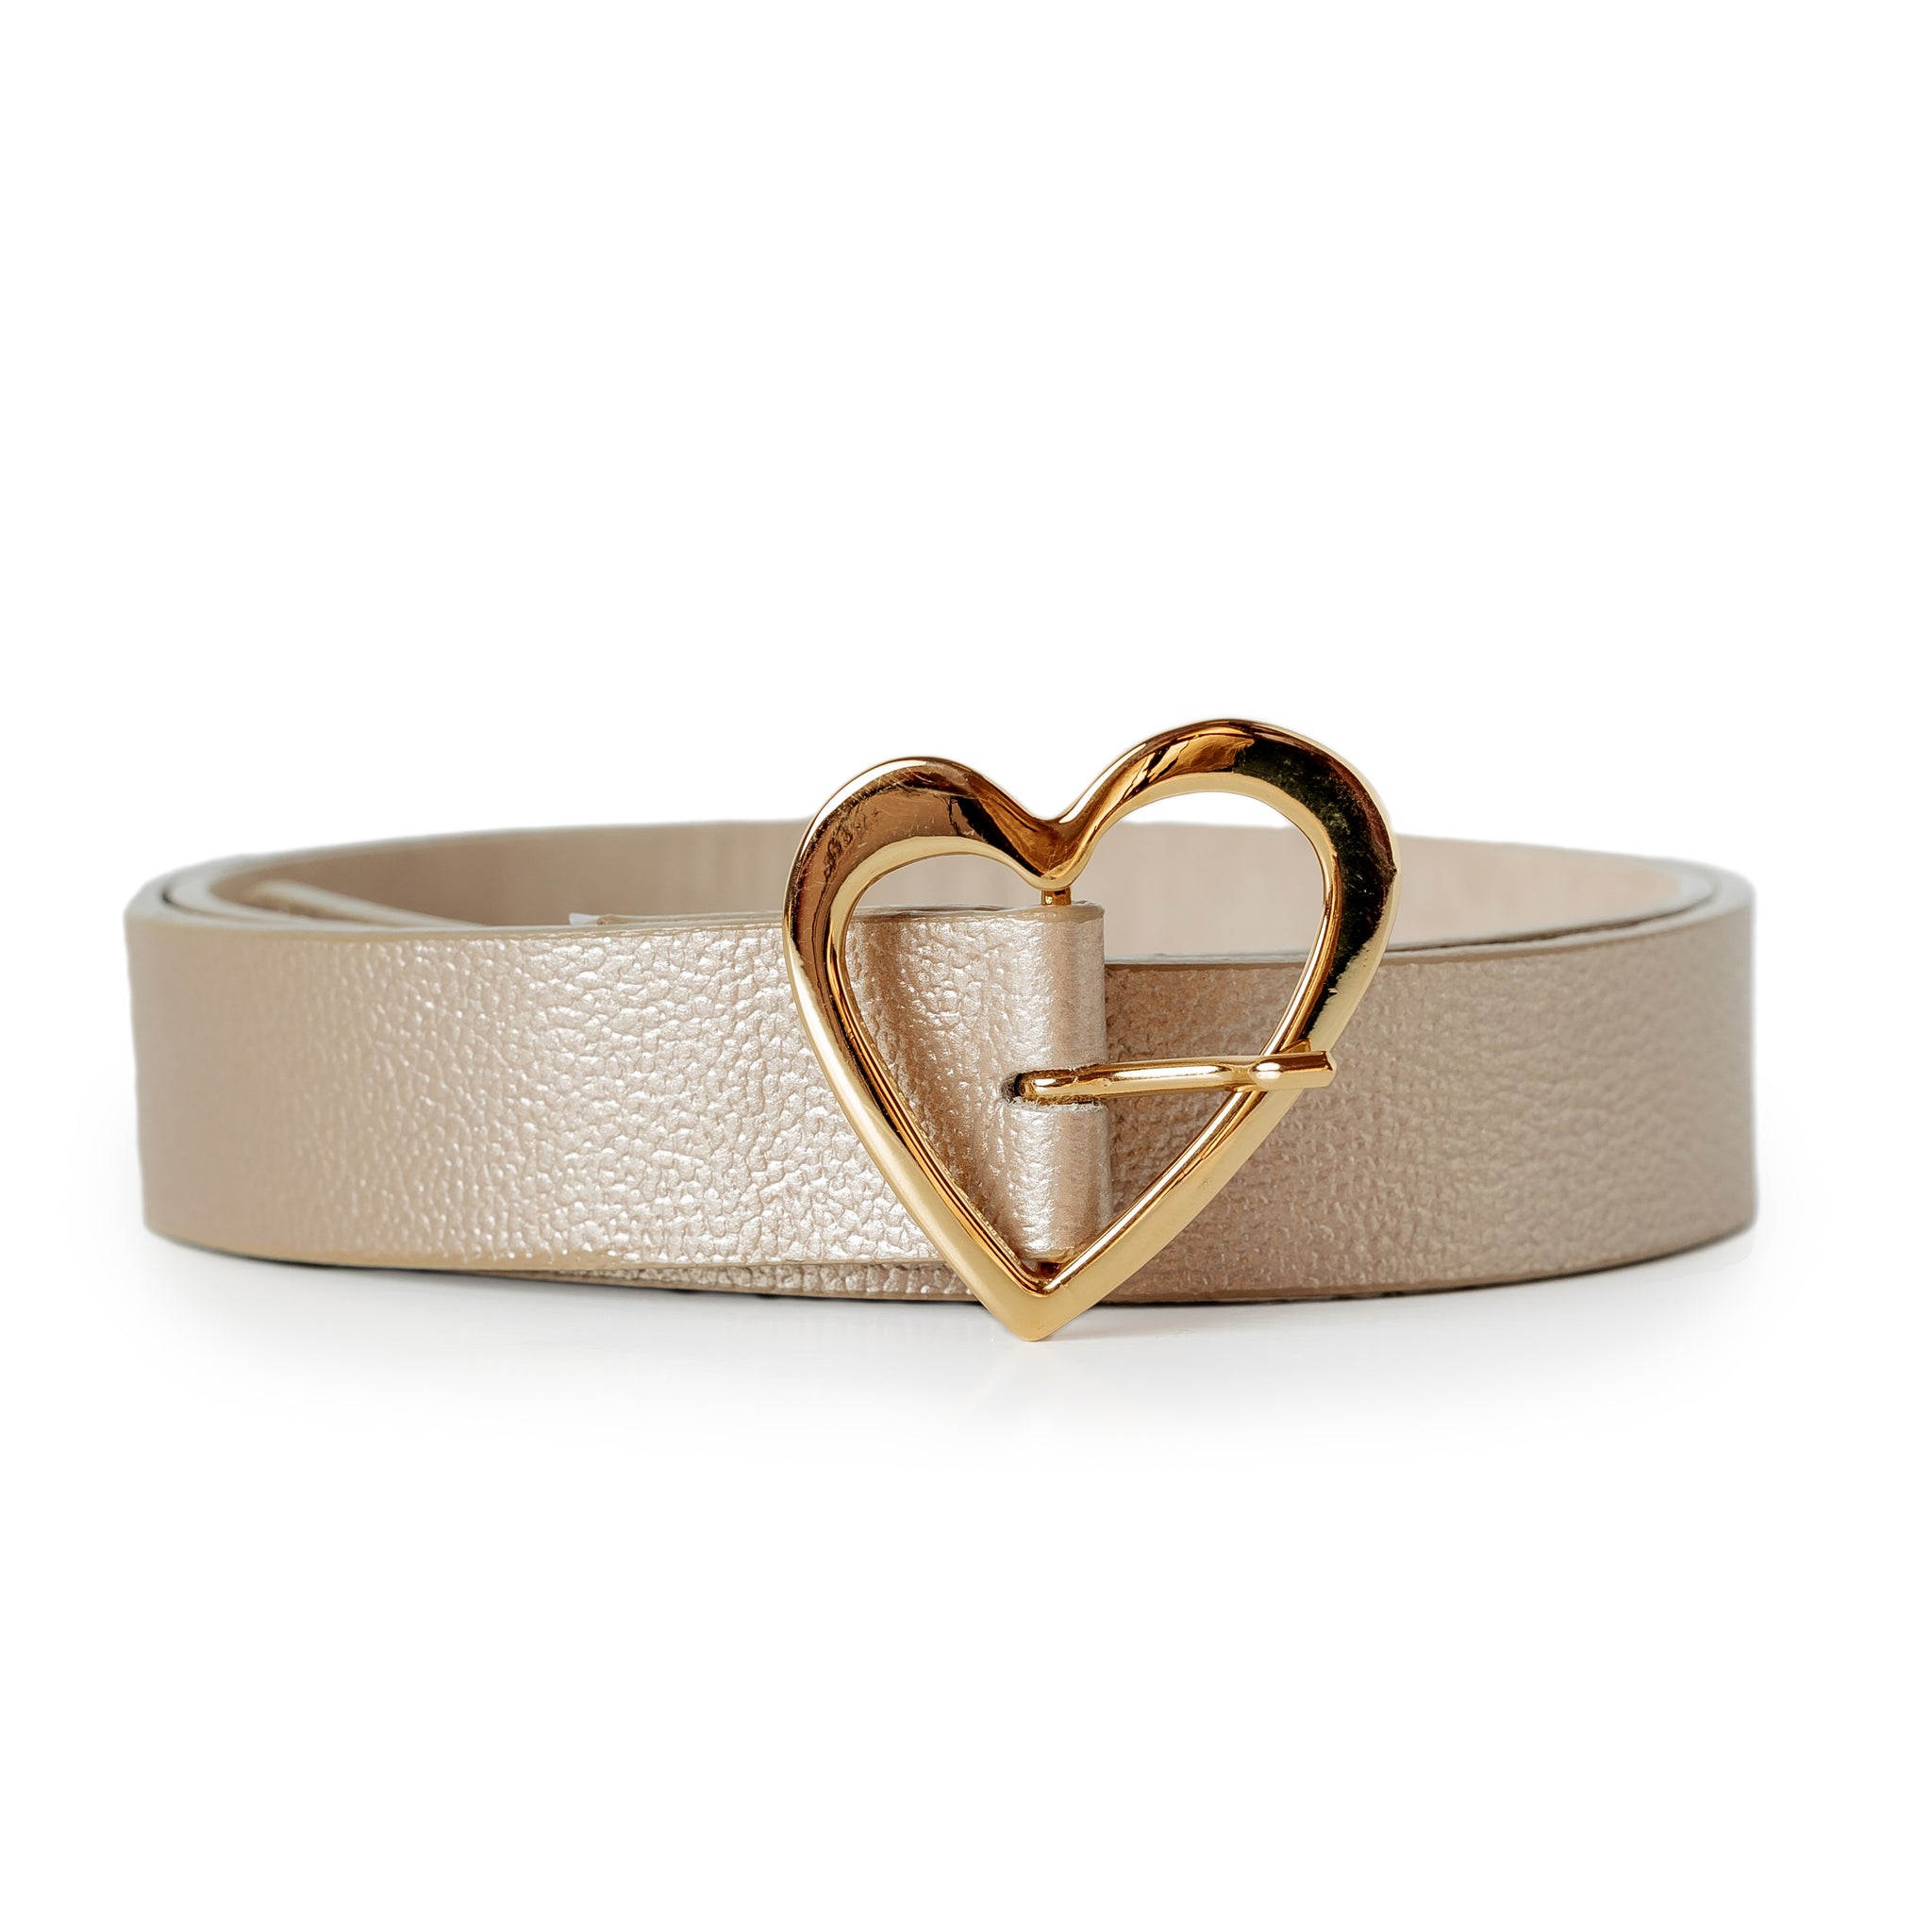  Belt Love - Gold